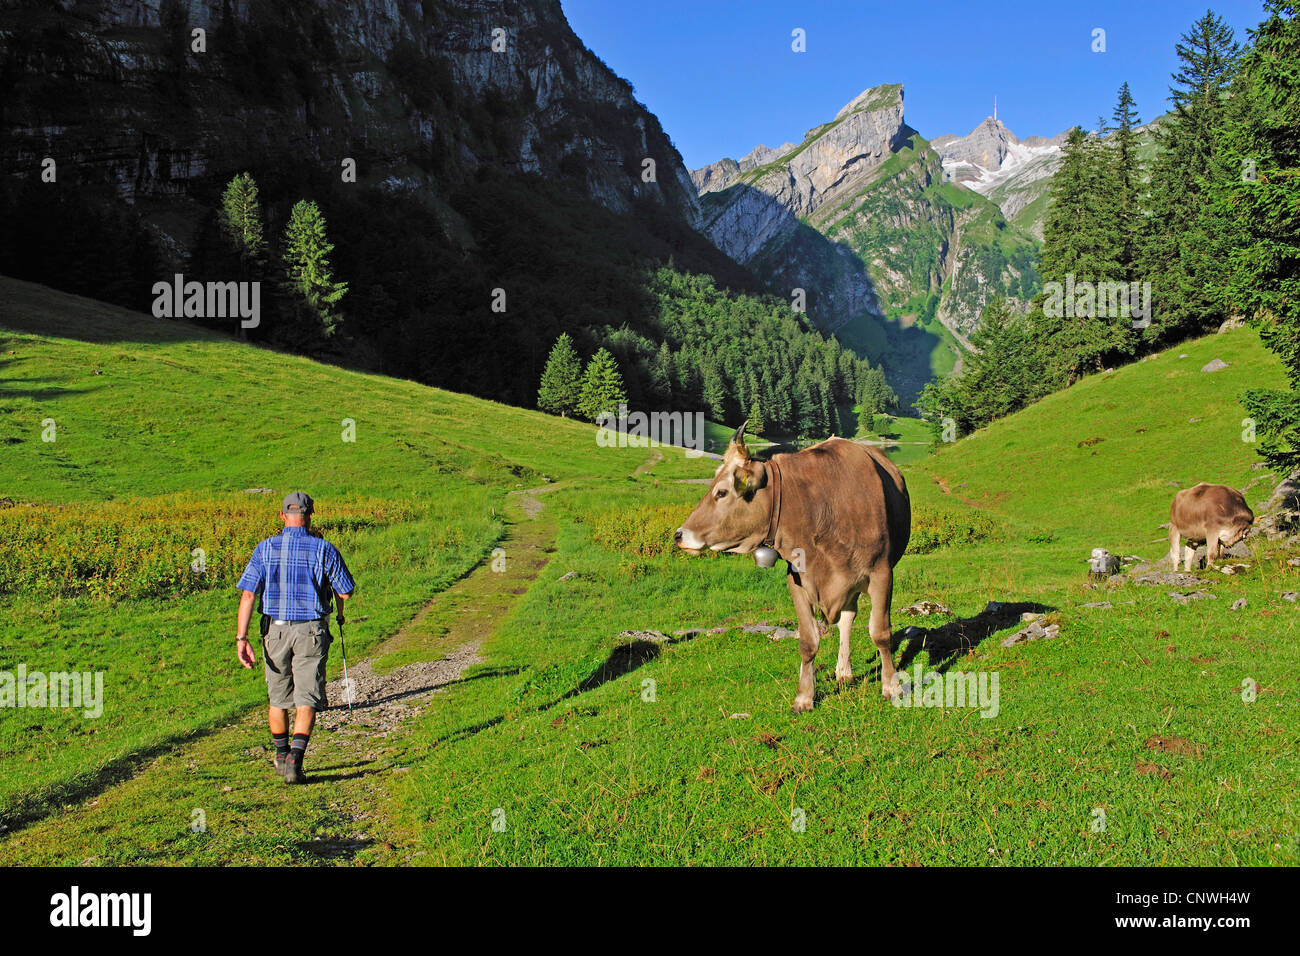 El ganado doméstico (Bos primigenius f. taurus), vaca mirando un caminante, Suiza, Appenzell , Alpsteingebirge Foto de stock